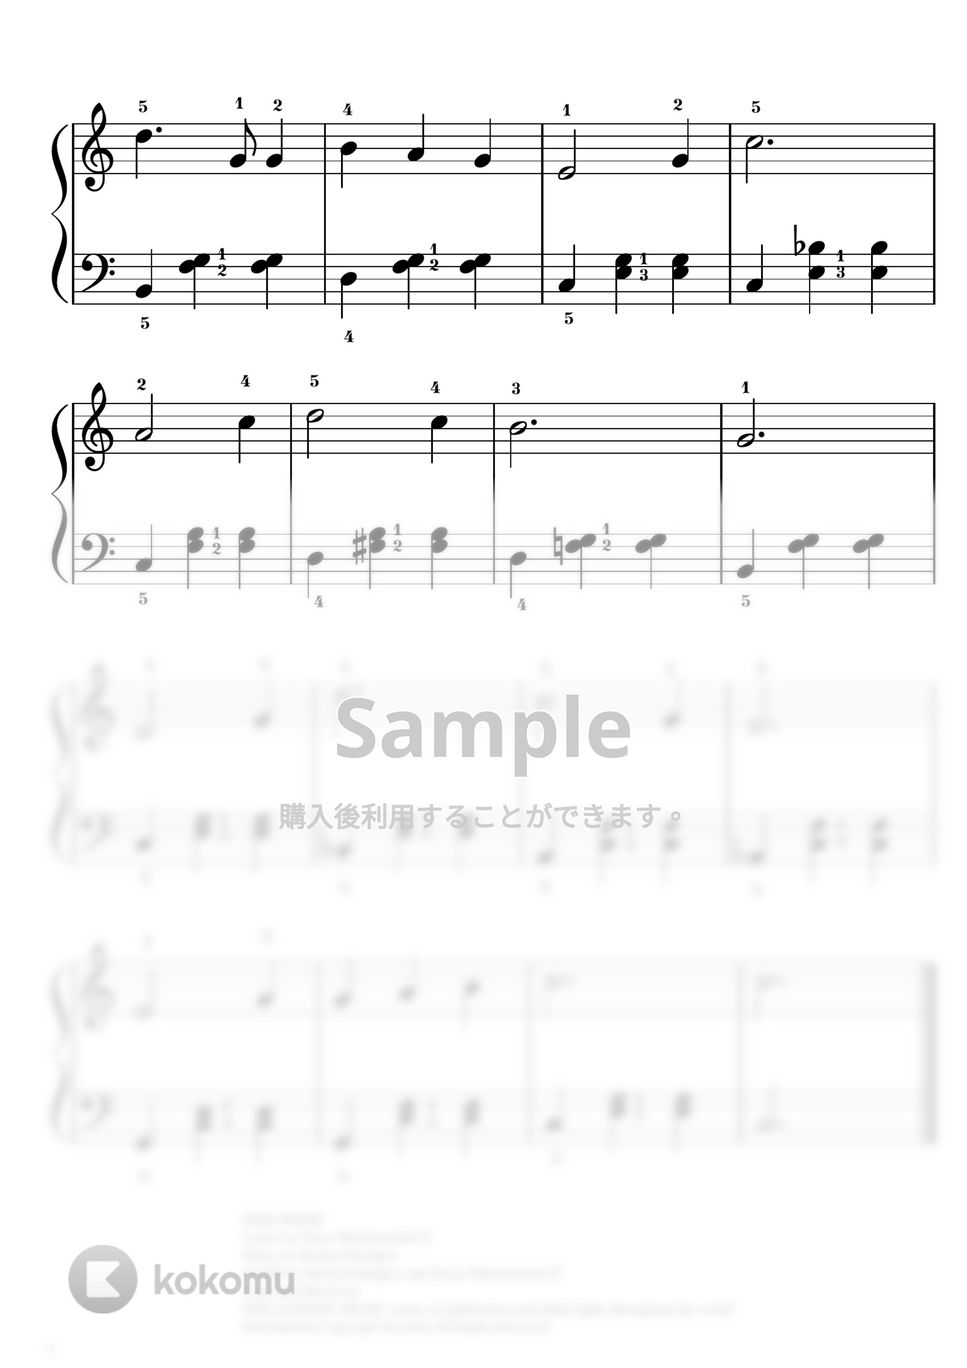 サウンドオブミュージック - 【初級】エーデルワイス by ピアノのせんせいの楽譜集